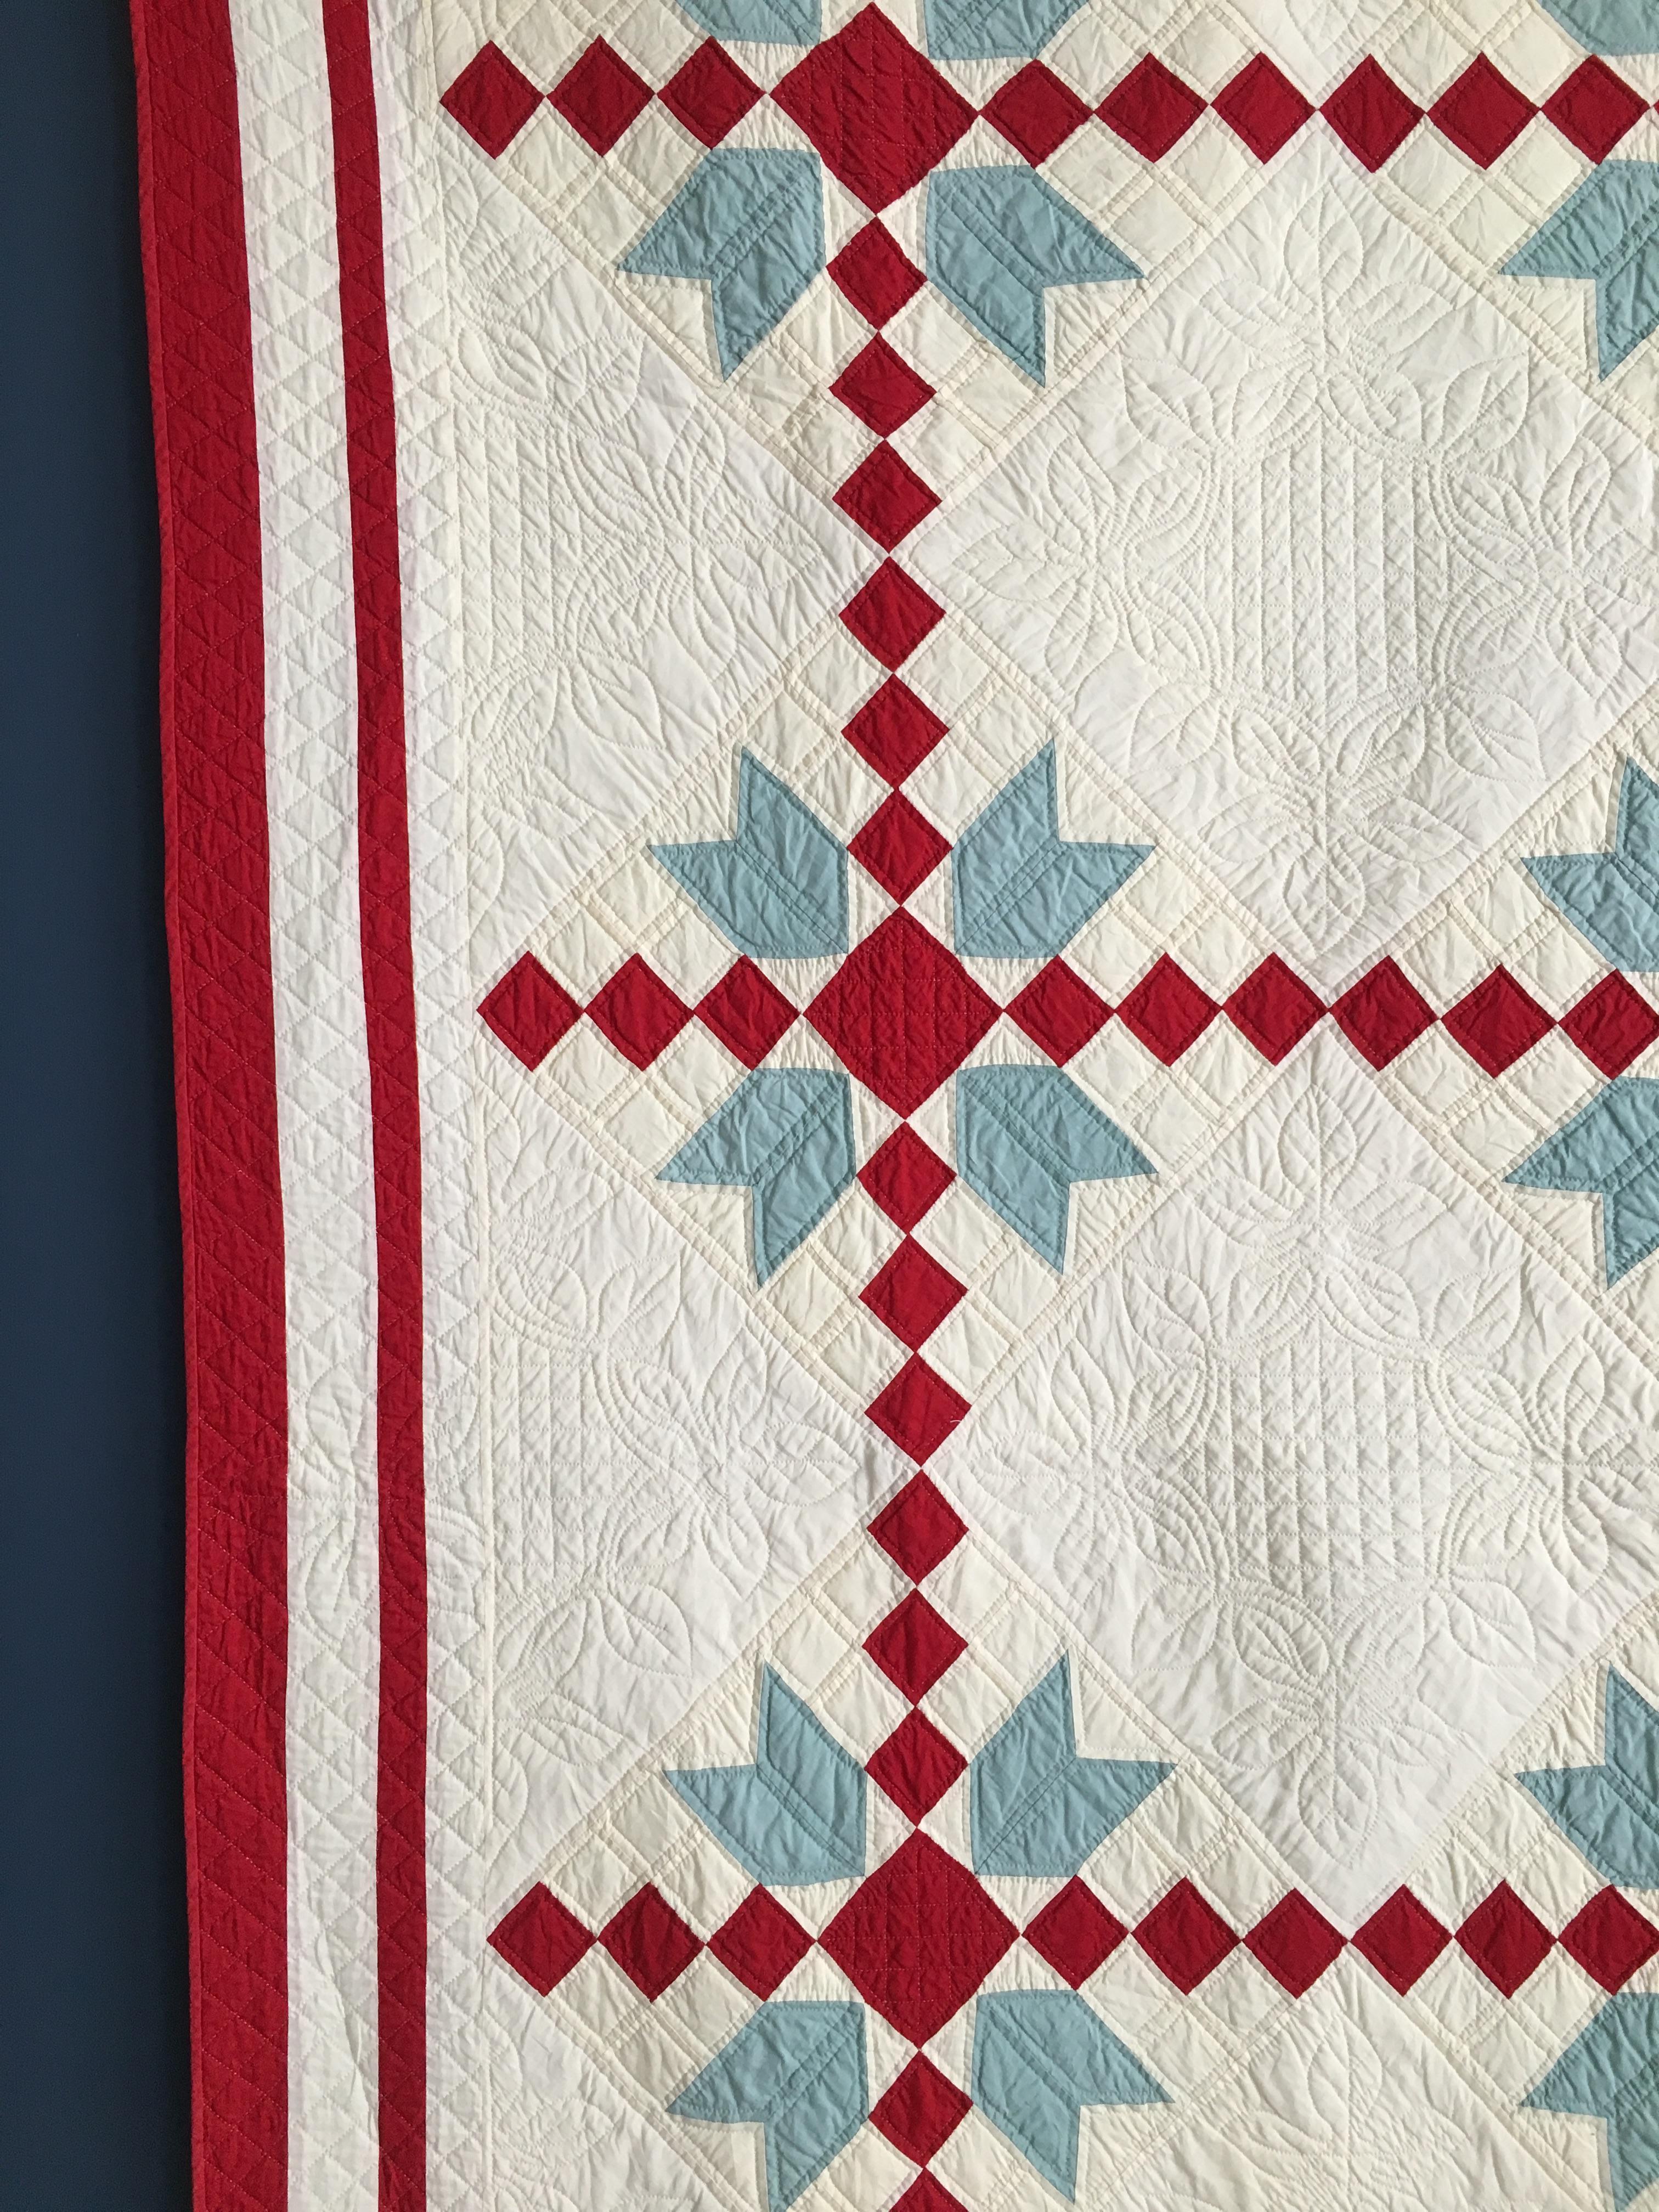 Folk Art Vintage Patchwork Quilt